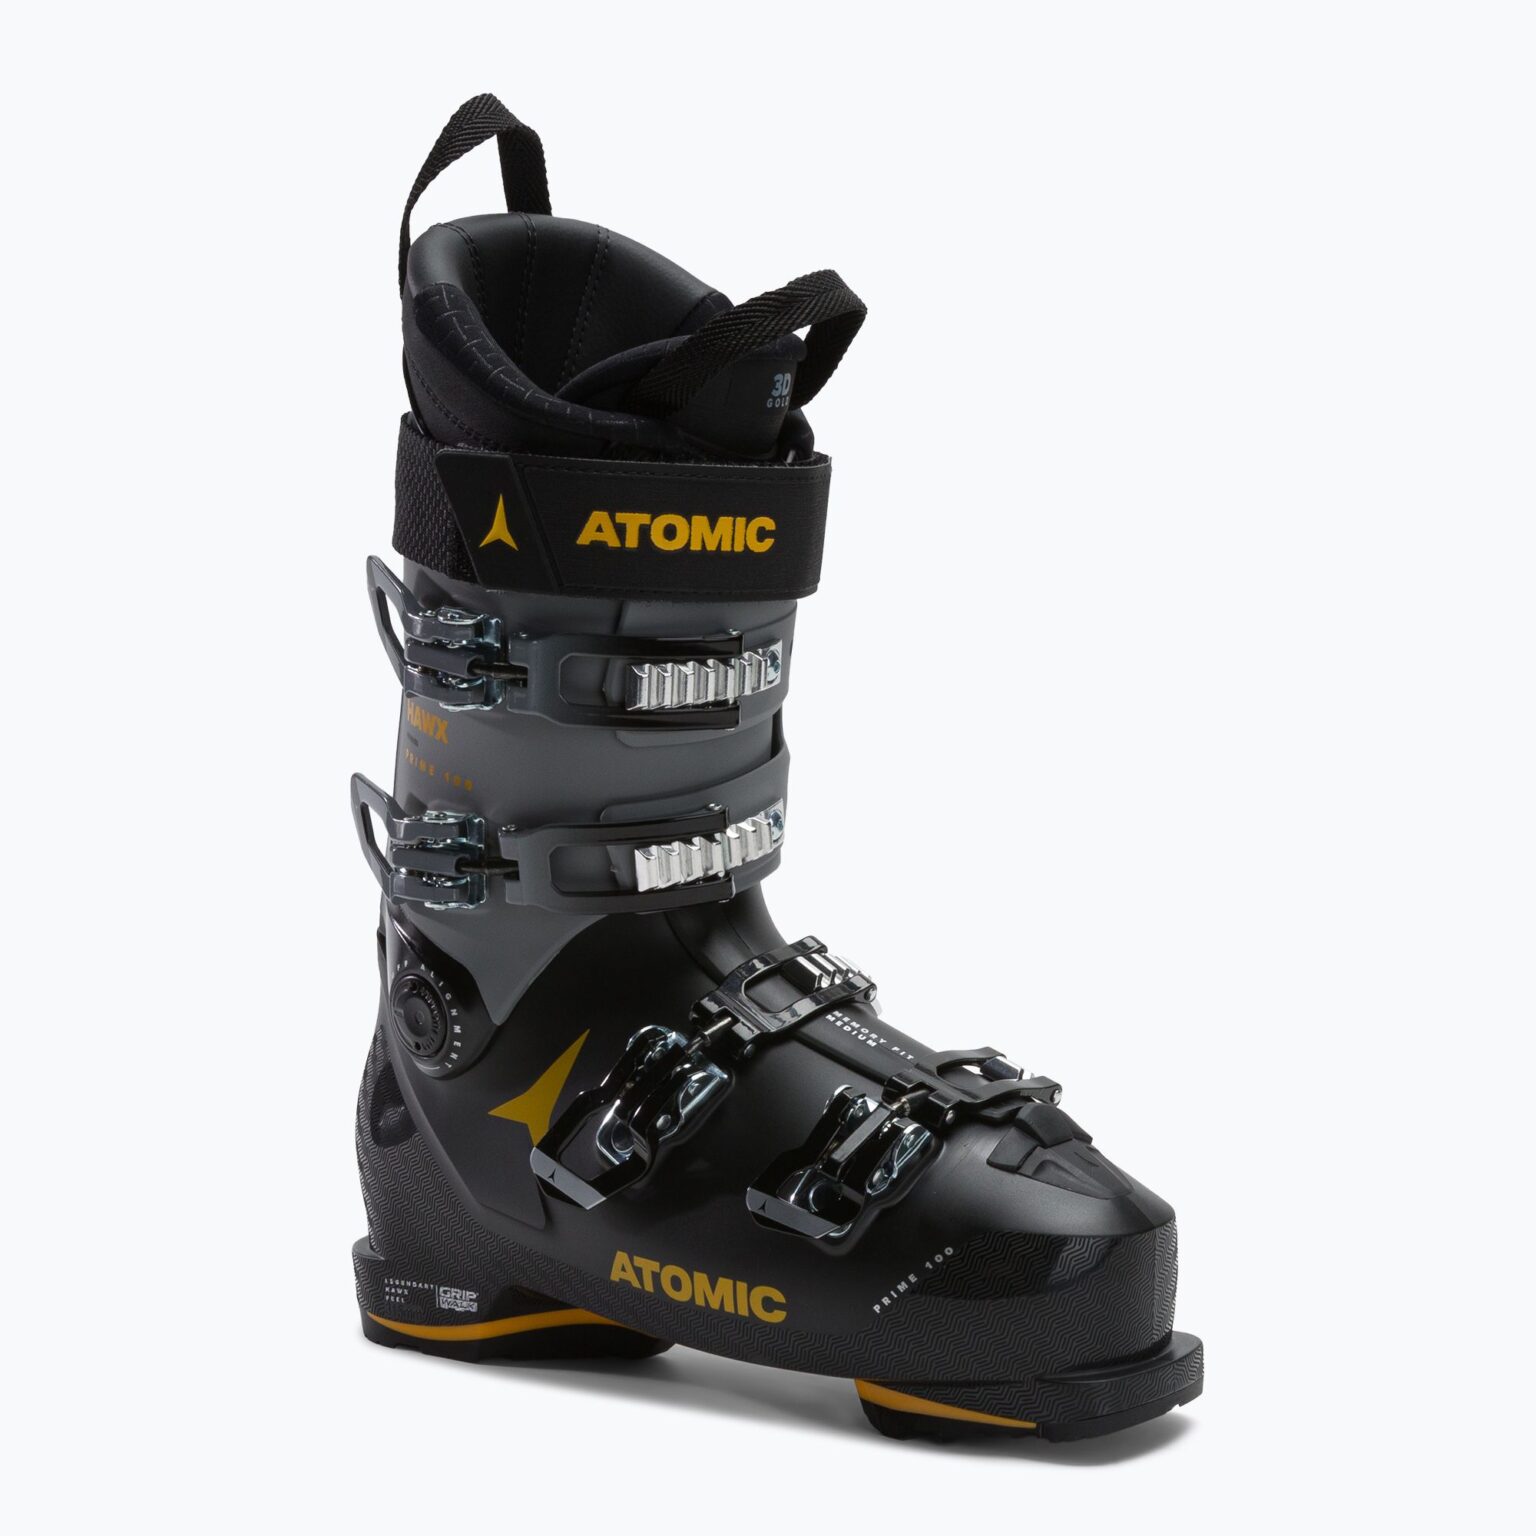 Buty narciarskie męskie Atomic Hawx Prime 100 GW black/grey/saffron